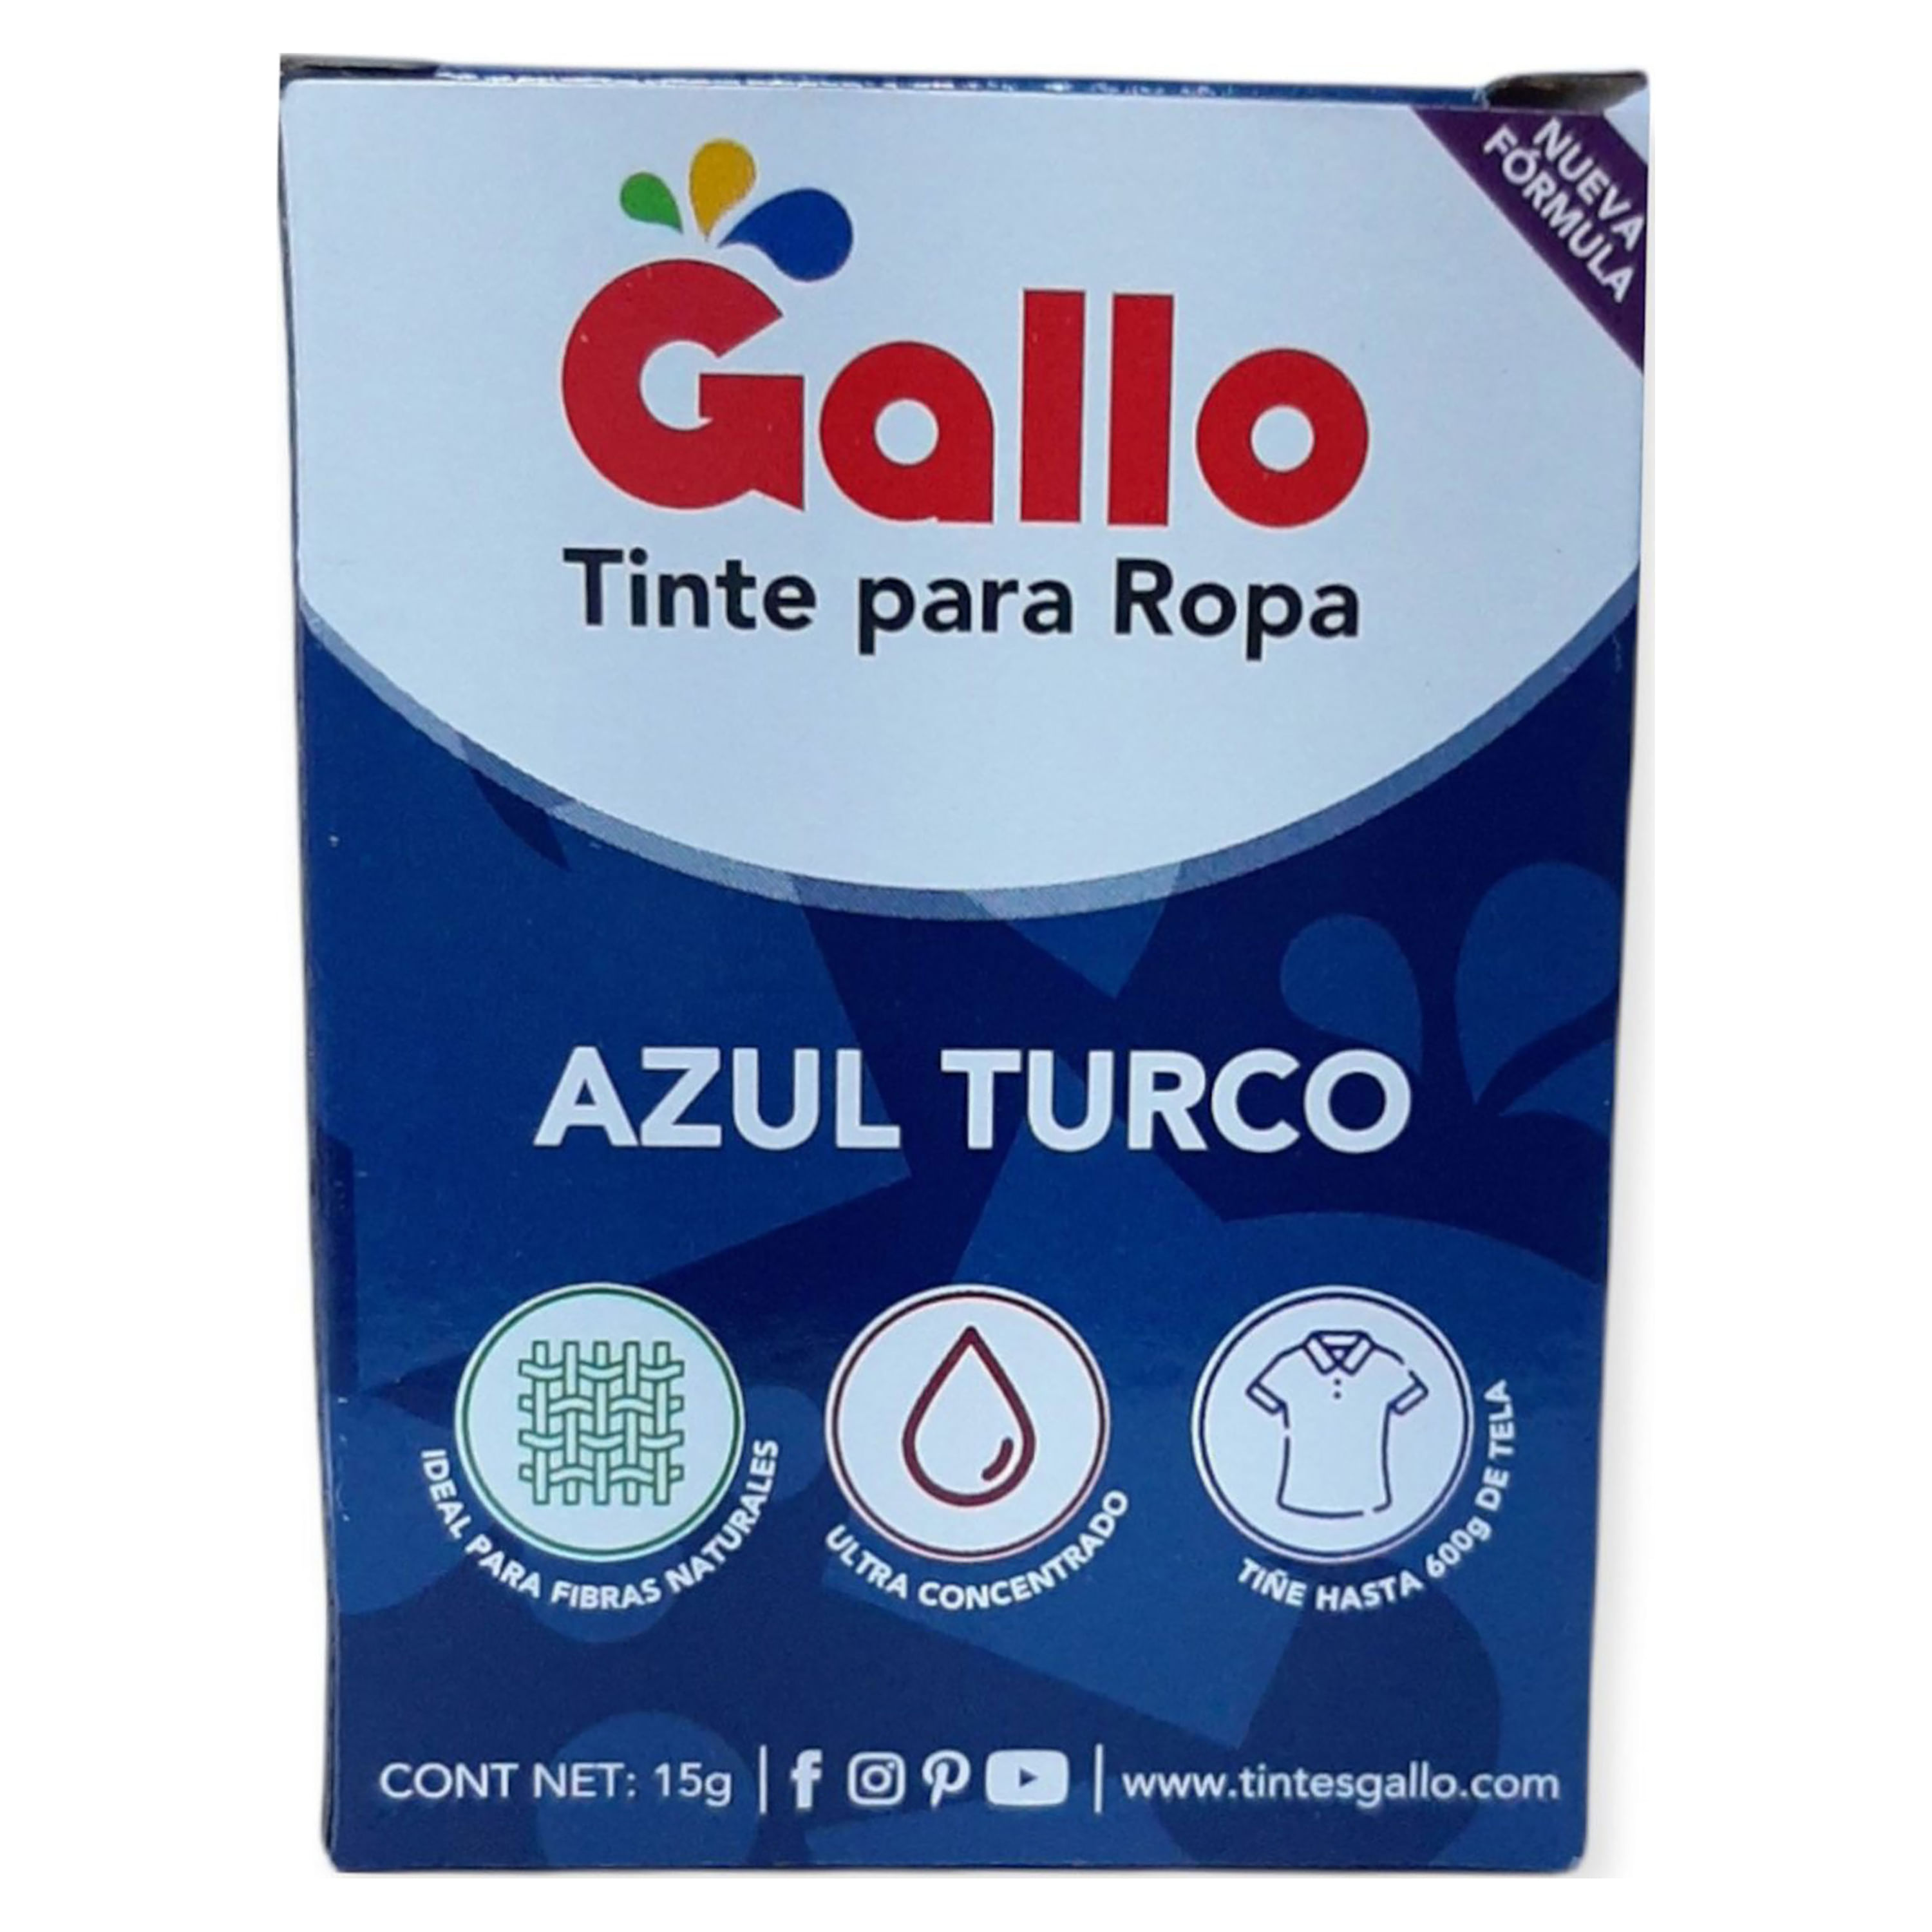 Tinte En Polvo Ropa Color Azul Turco | Walmart Costa Rica